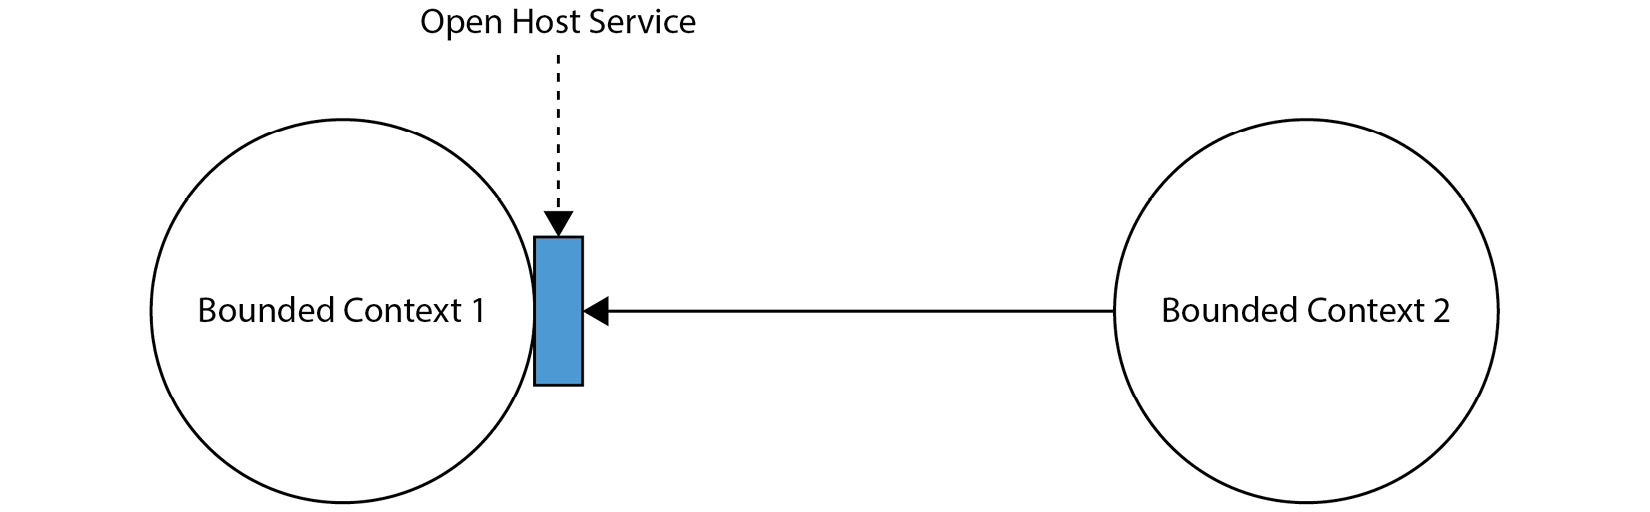 Figure 2.4 – An Open Host Service
